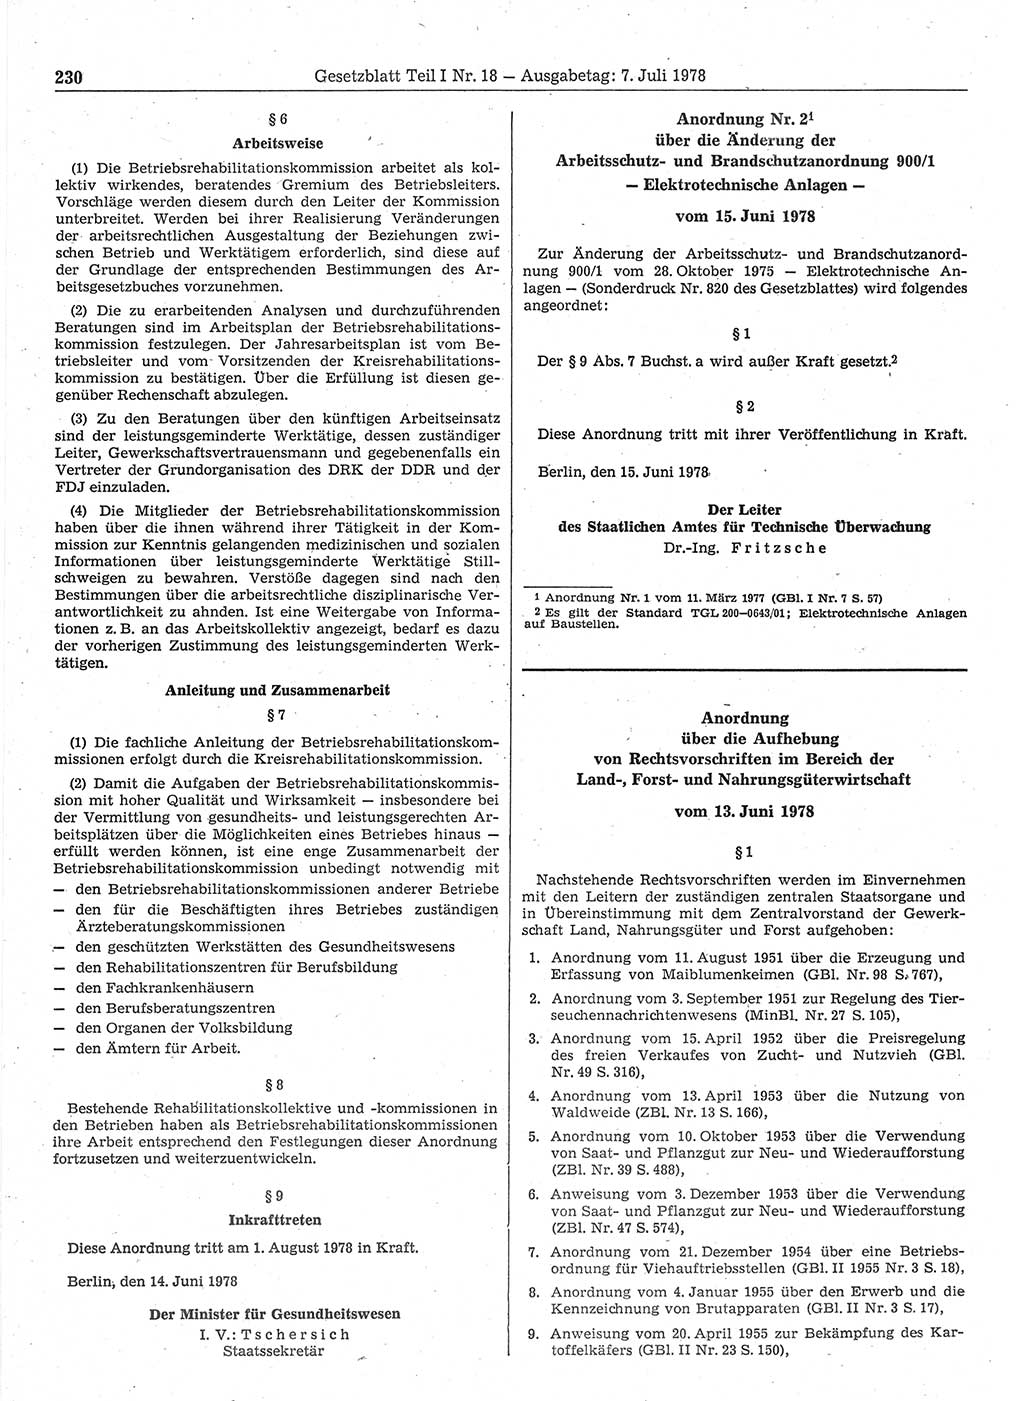 Gesetzblatt (GBl.) der Deutschen Demokratischen Republik (DDR) Teil Ⅰ 1978, Seite 230 (GBl. DDR Ⅰ 1978, S. 230)